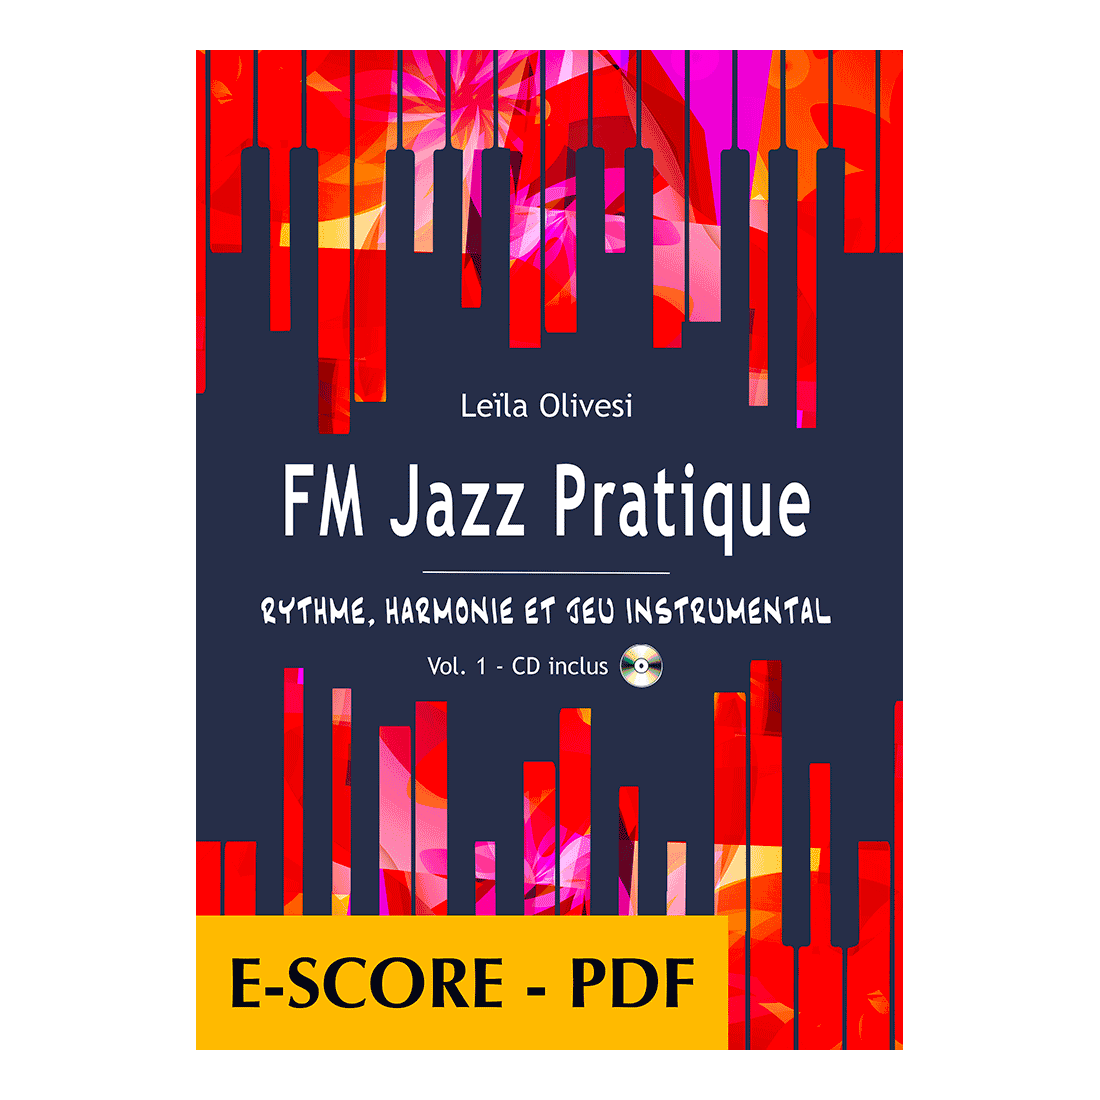 FM Jazz Pratique - Rythme, harmonie et jeu instrumental - Vol. 1